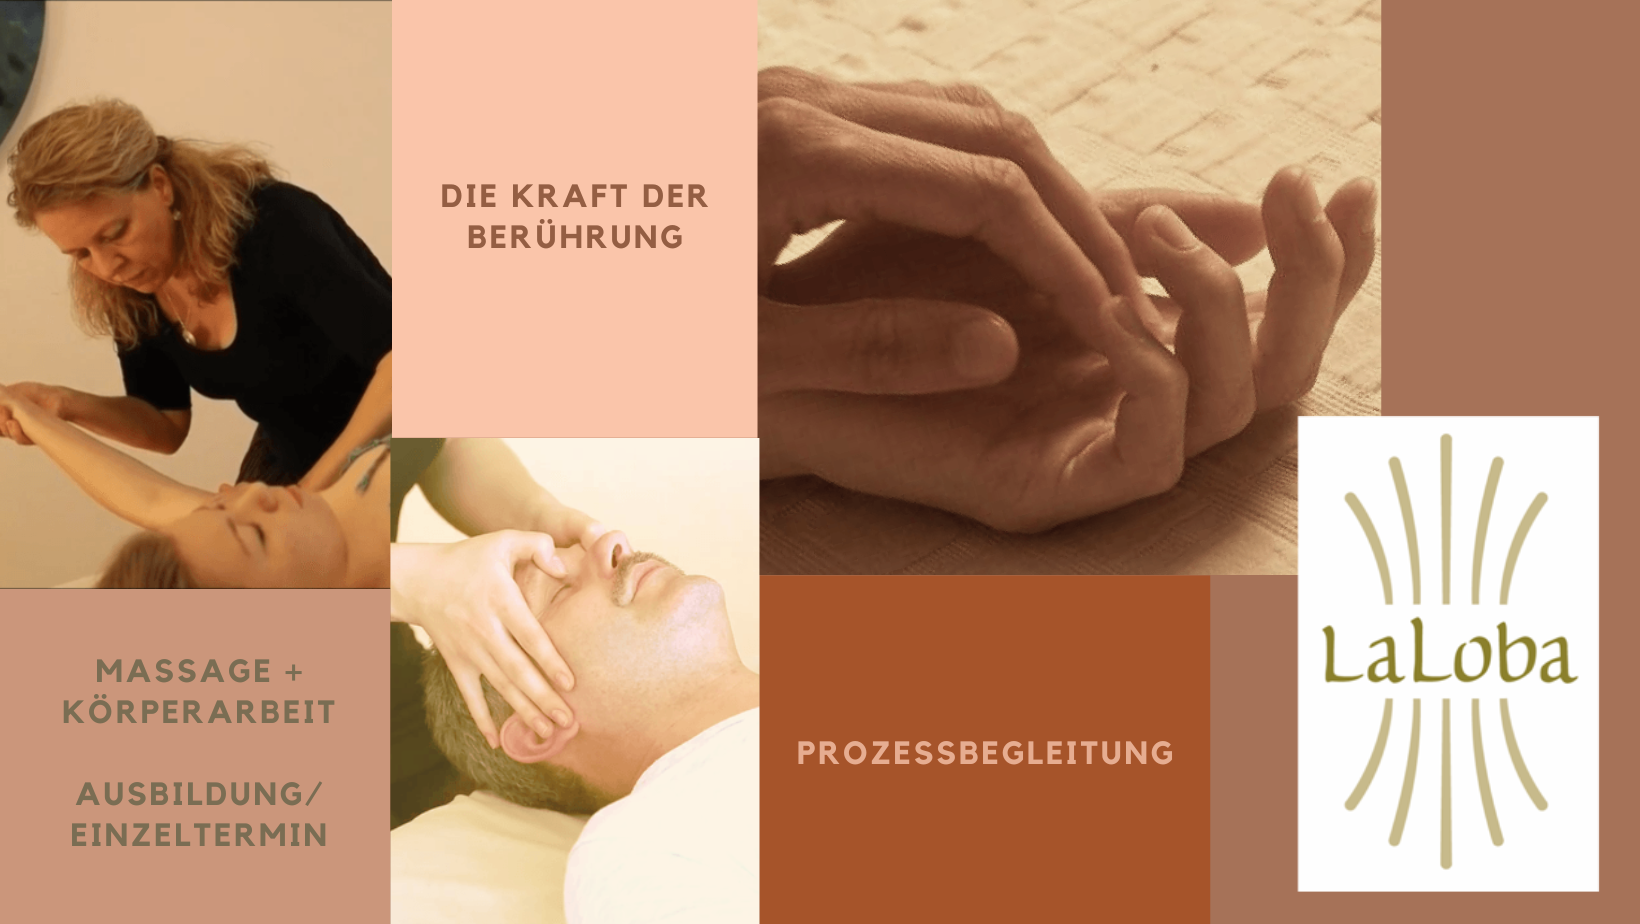 Die Kraft der Berührung, Prozessbegleitung, Massage und Massageausbildung, Johanna Baumann, Kopfmassage, Berührung  LaLoba 
